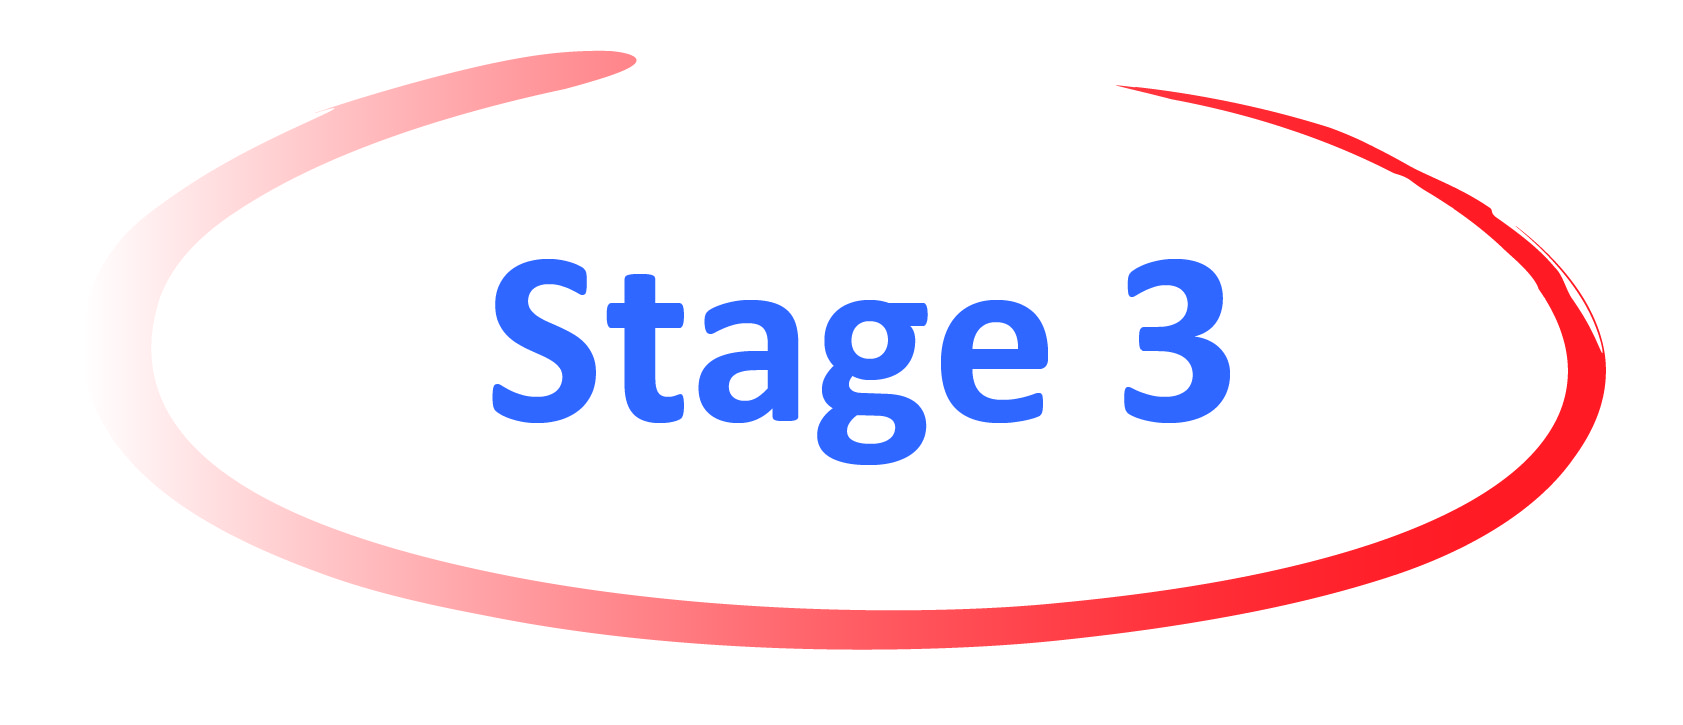 stage 3 - Oxford University Innovation